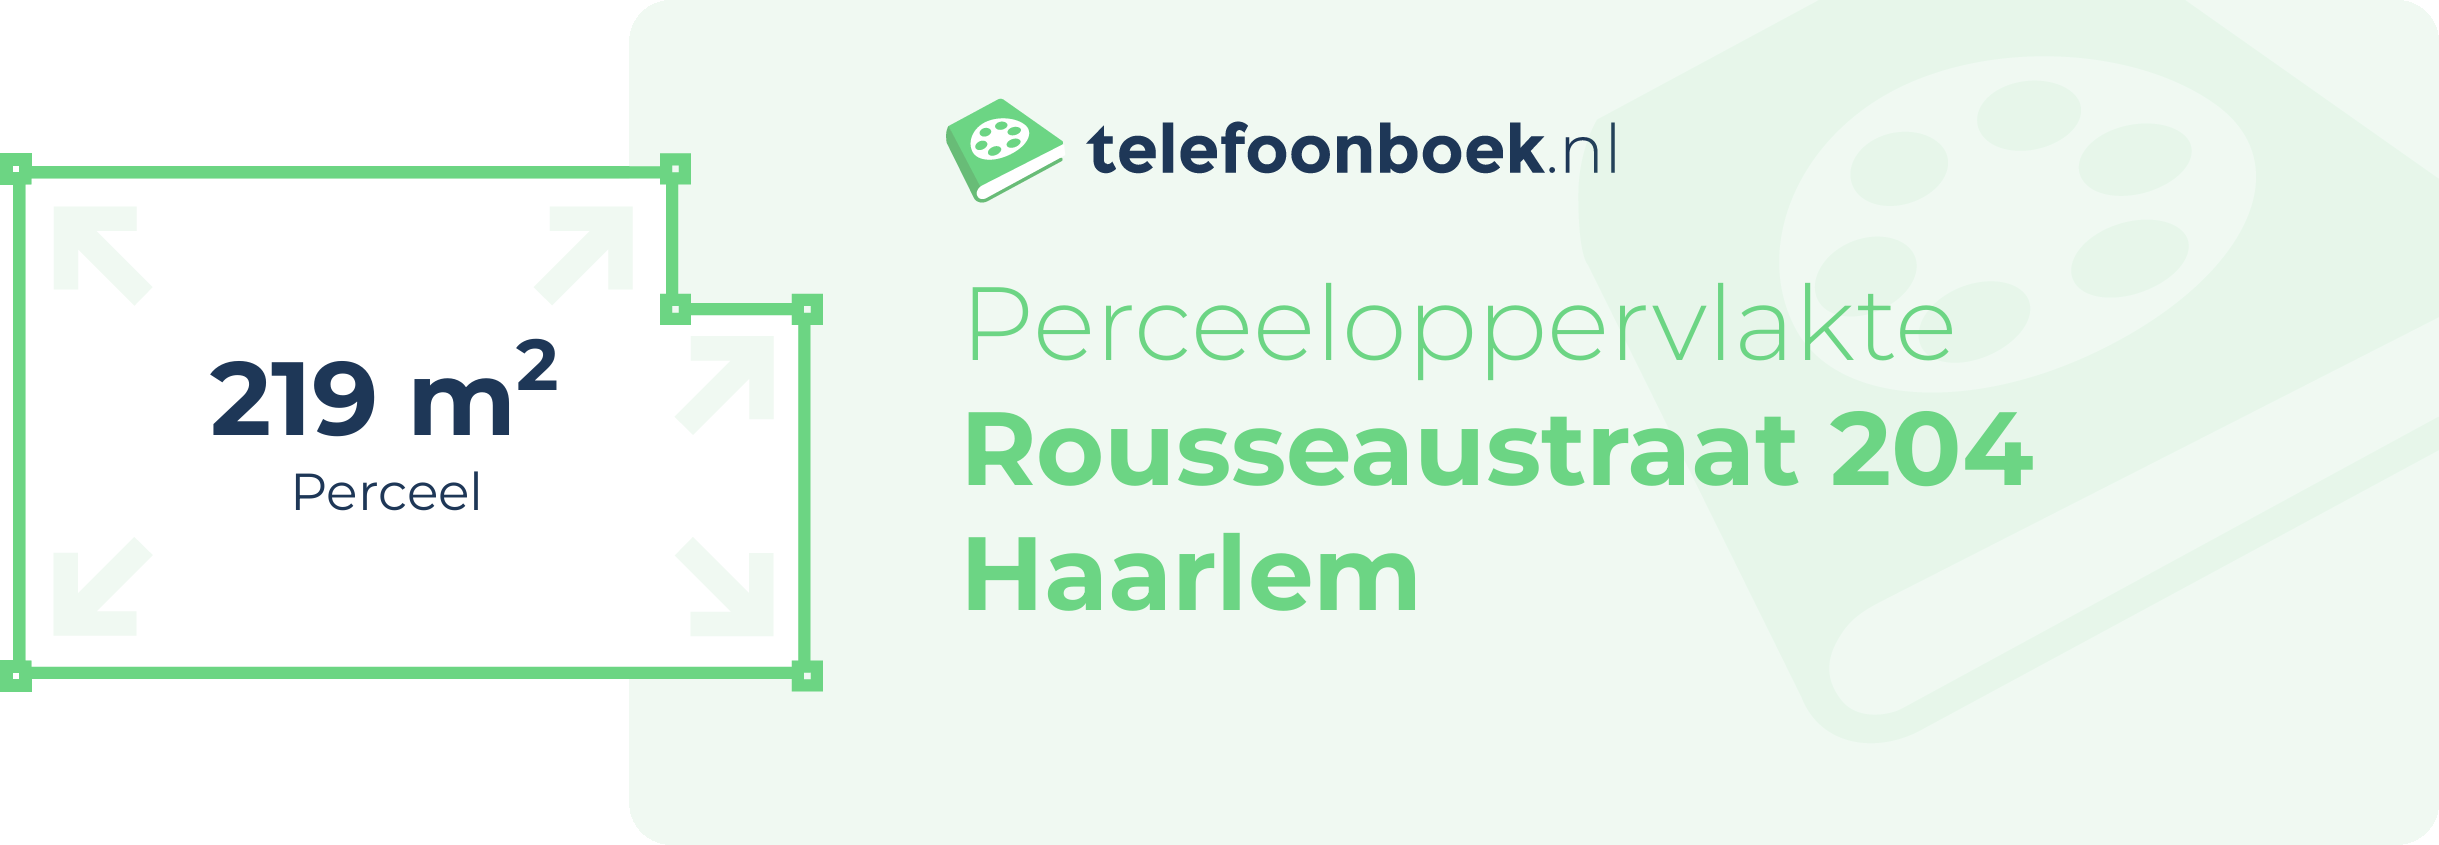 Perceeloppervlakte Rousseaustraat 204 Haarlem